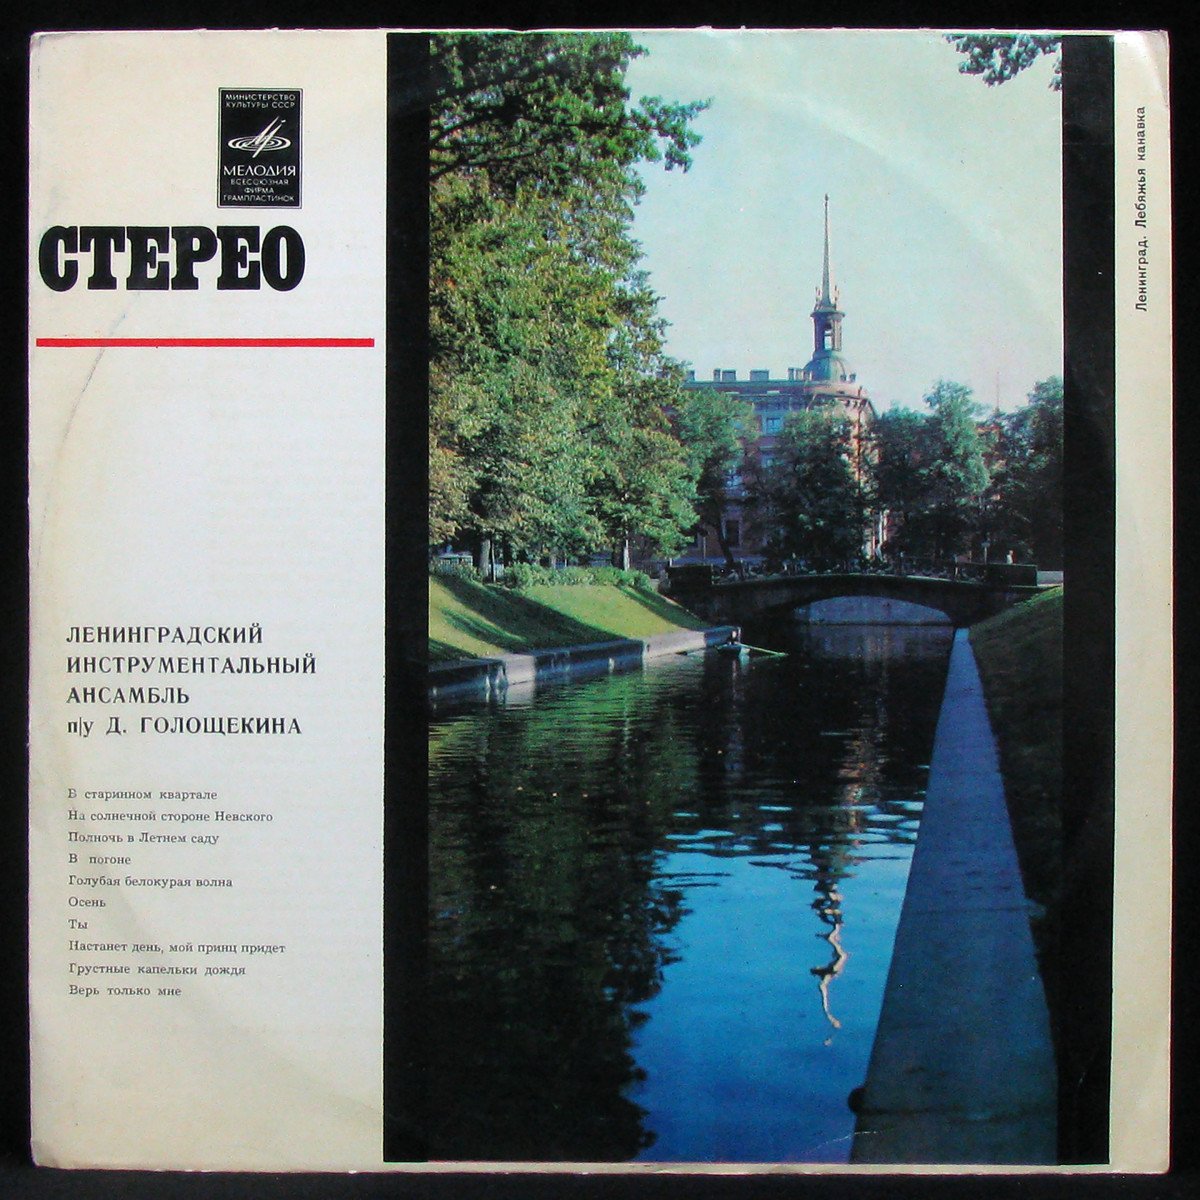 Инструментальный Ансамбль Д. Голощекина (1975)